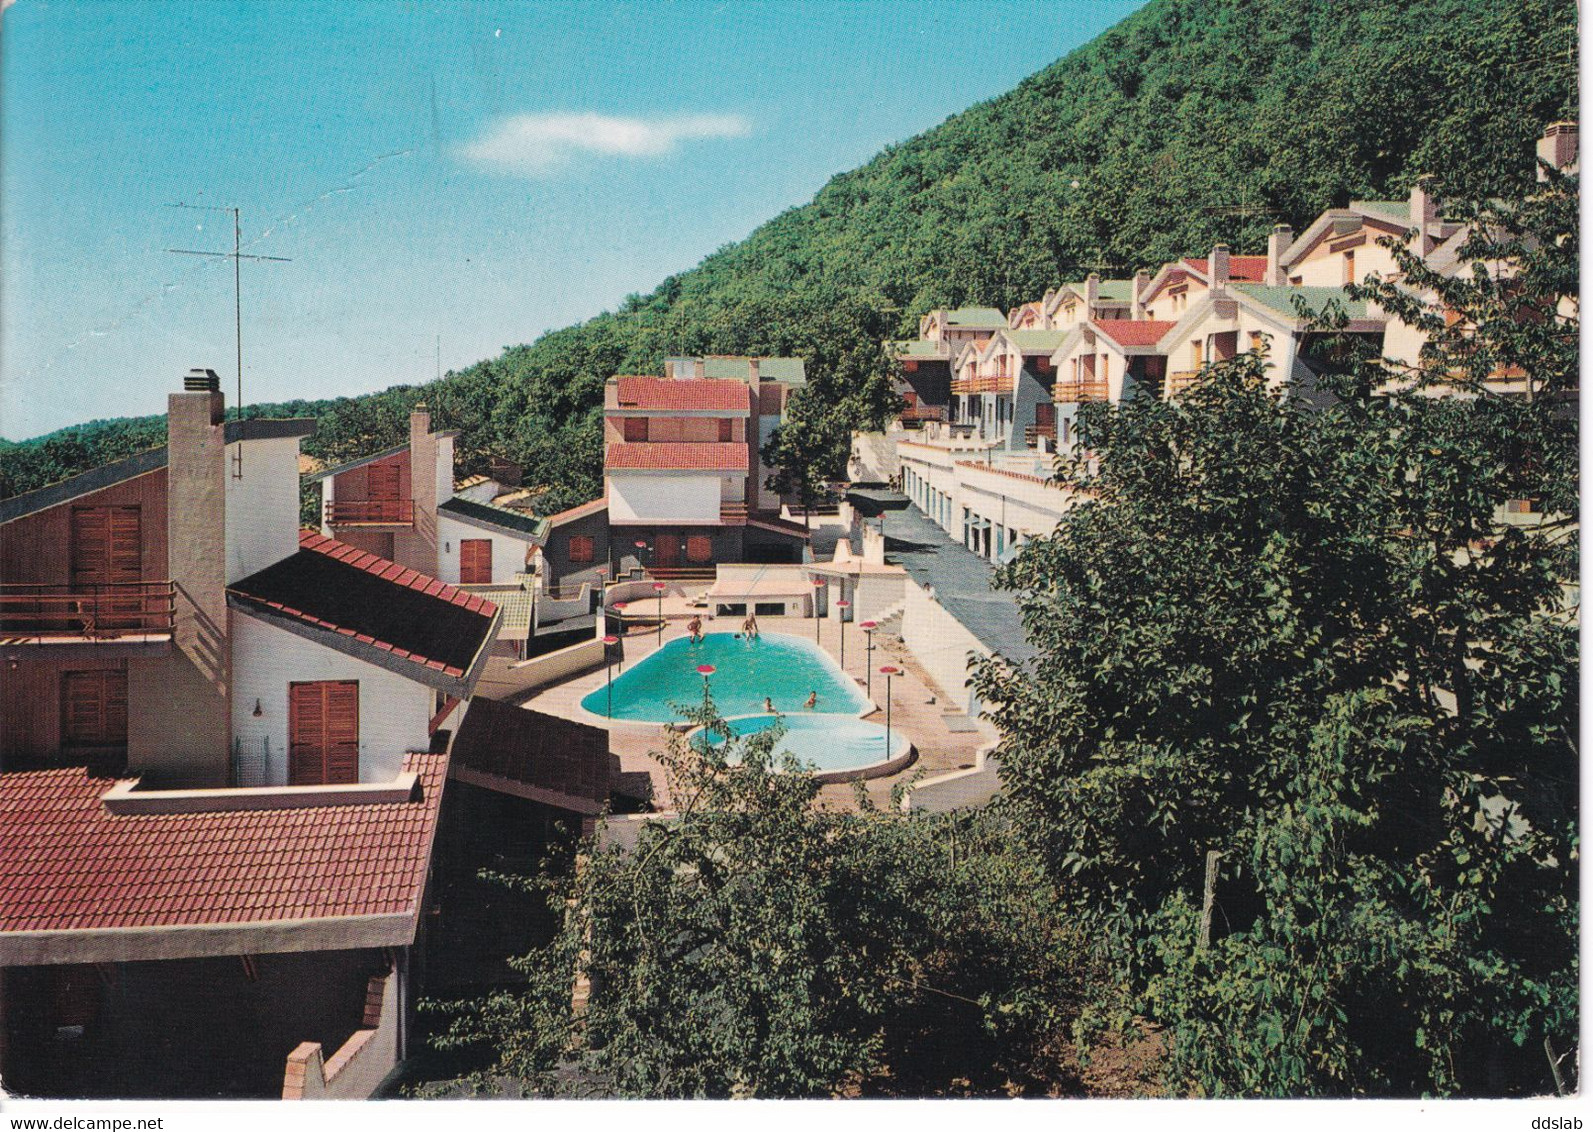 Roccamonfina (Caserta) - Lotto 3 cartoline Anni '70 - Parco Dacomo